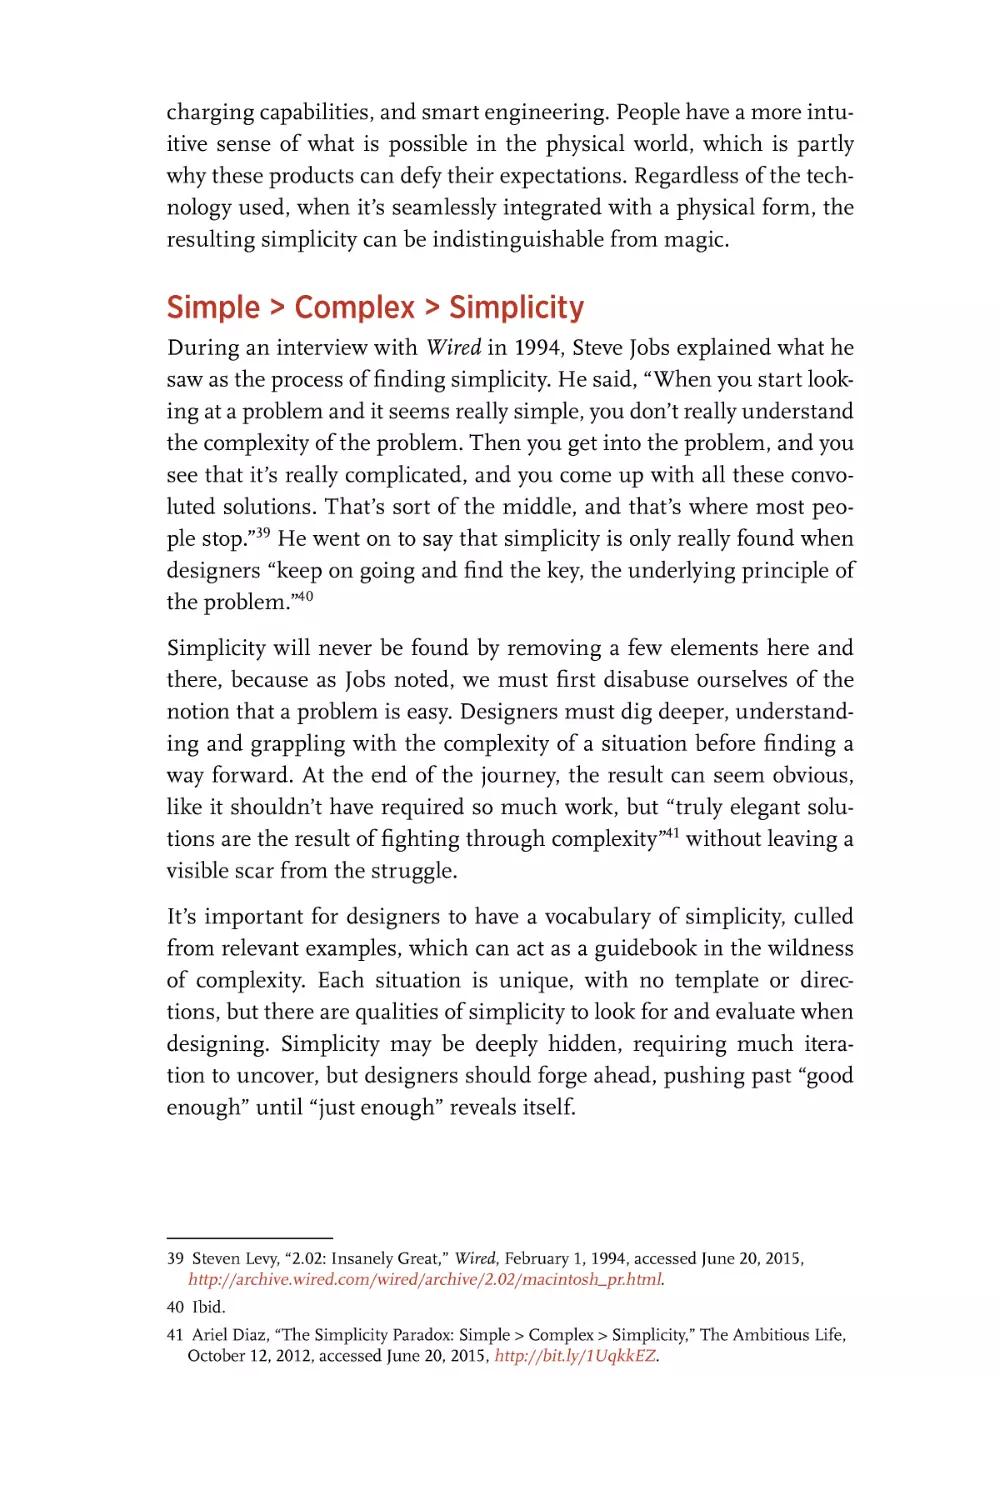 Simple > Complex > Simplicity